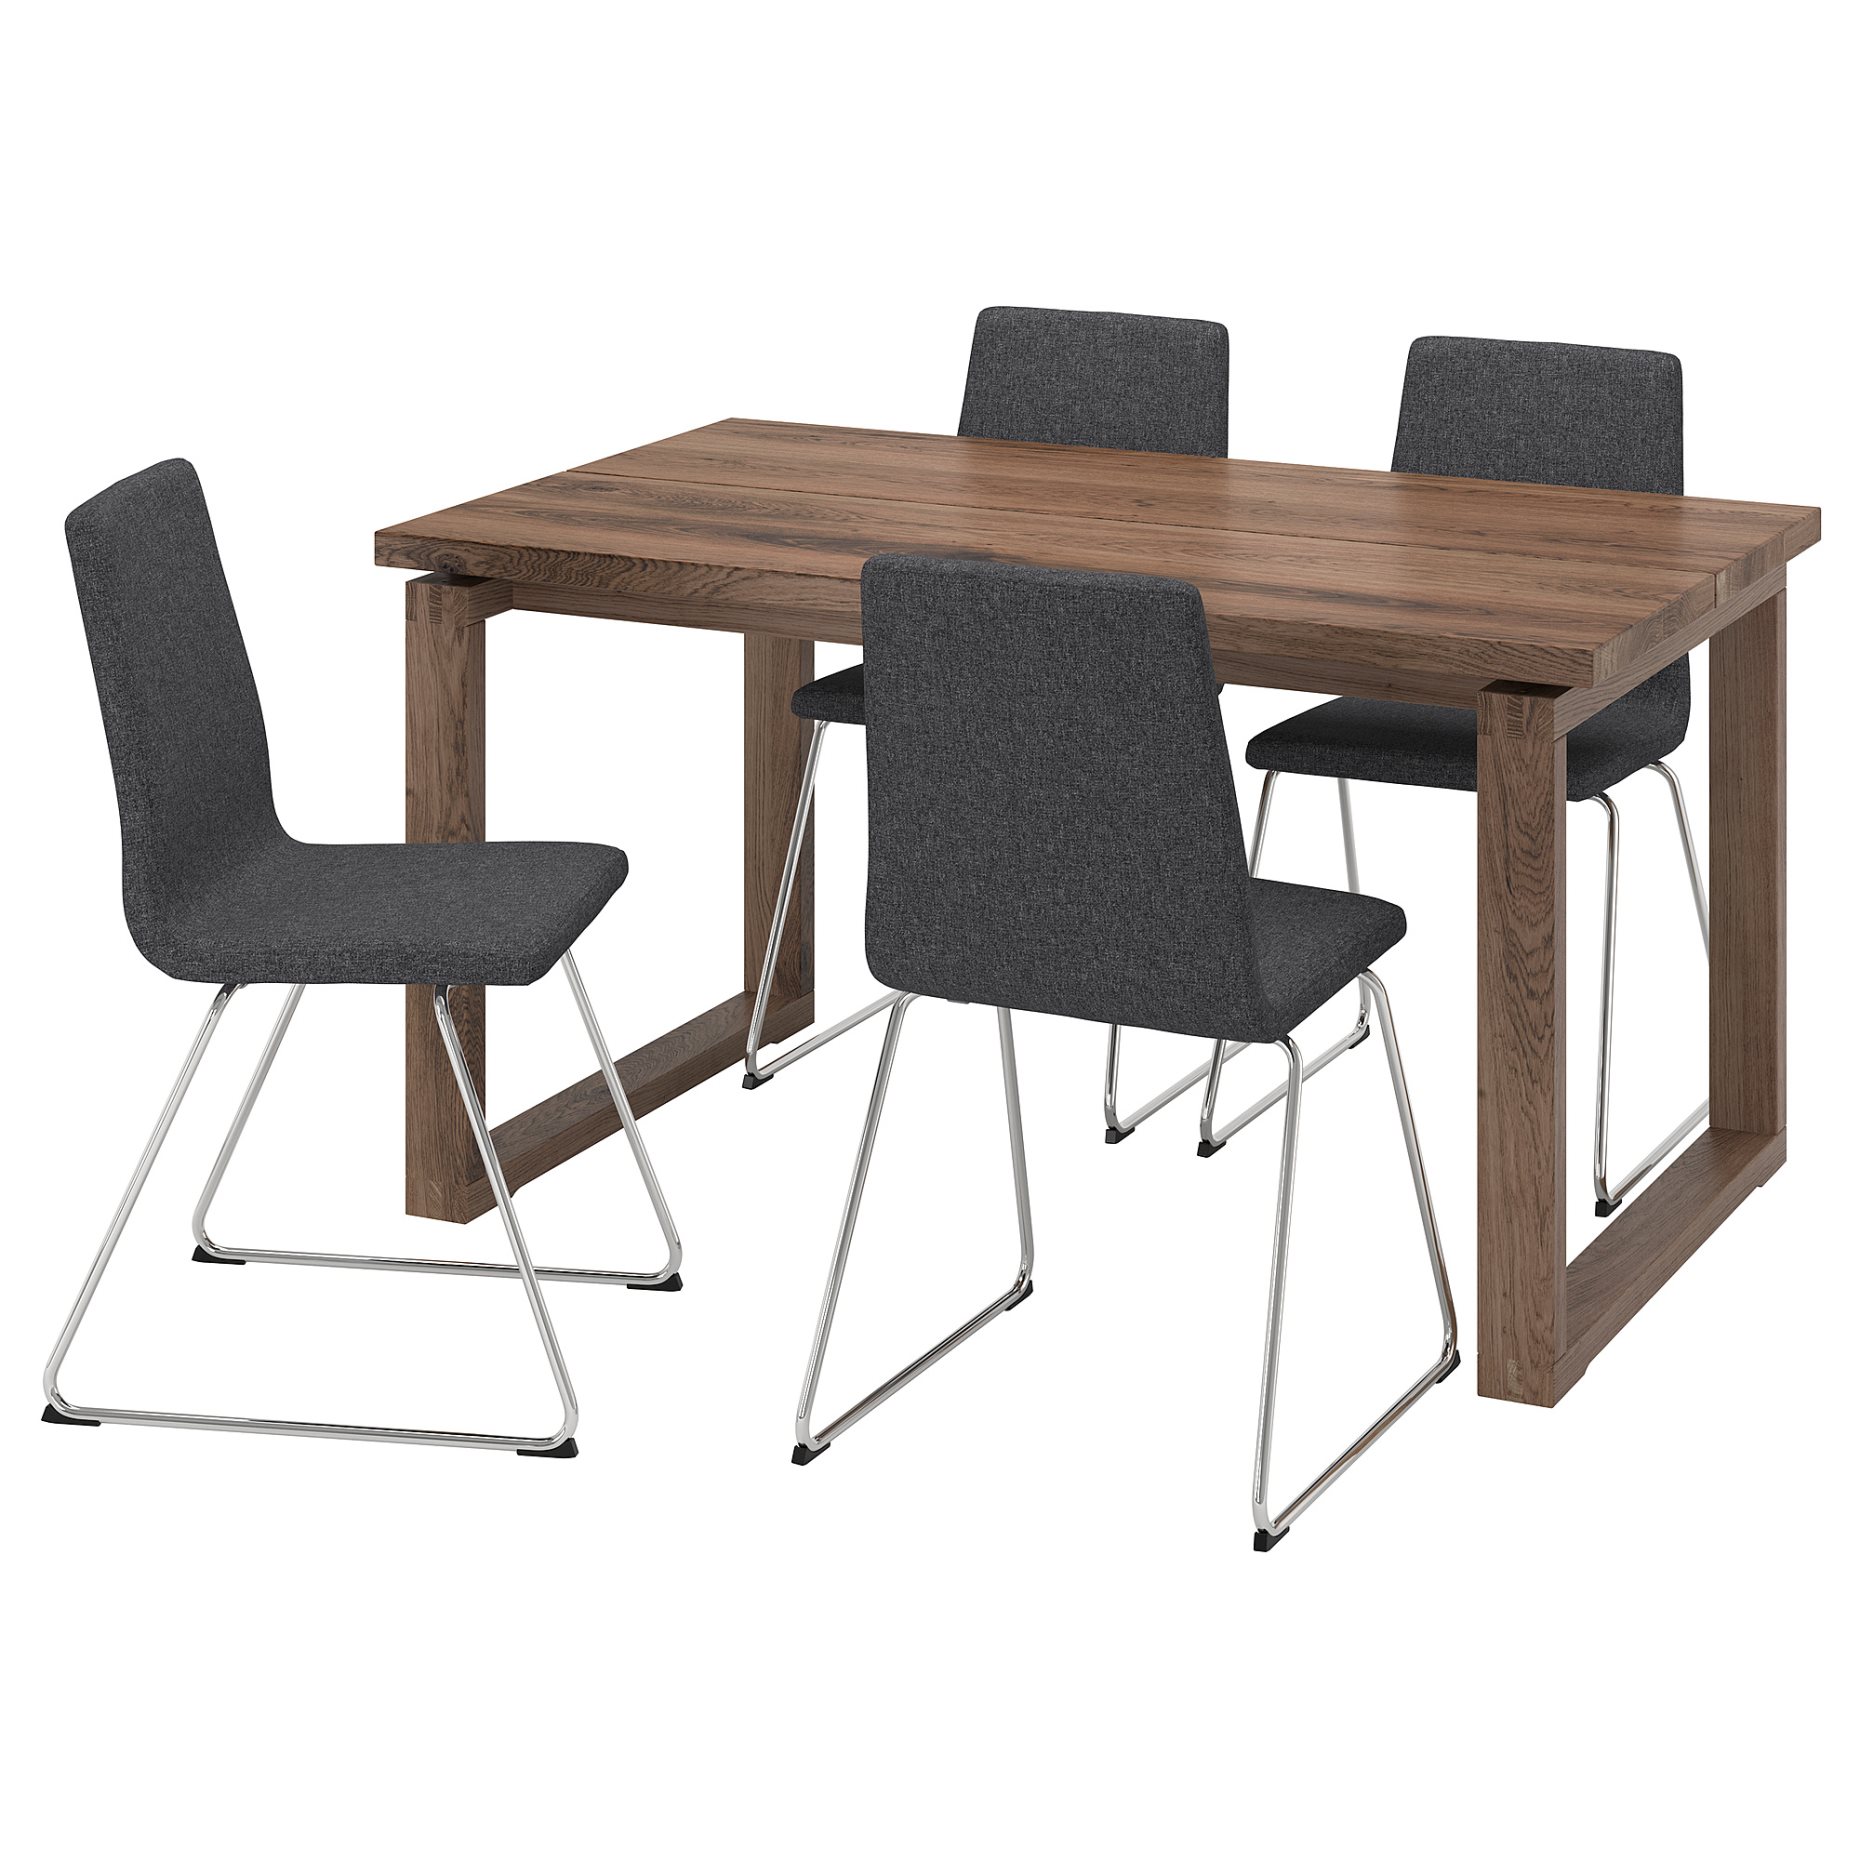 MORBYLANGA/LILLANAS, table and 4 chairs, 140x85 cm, 094.950.87